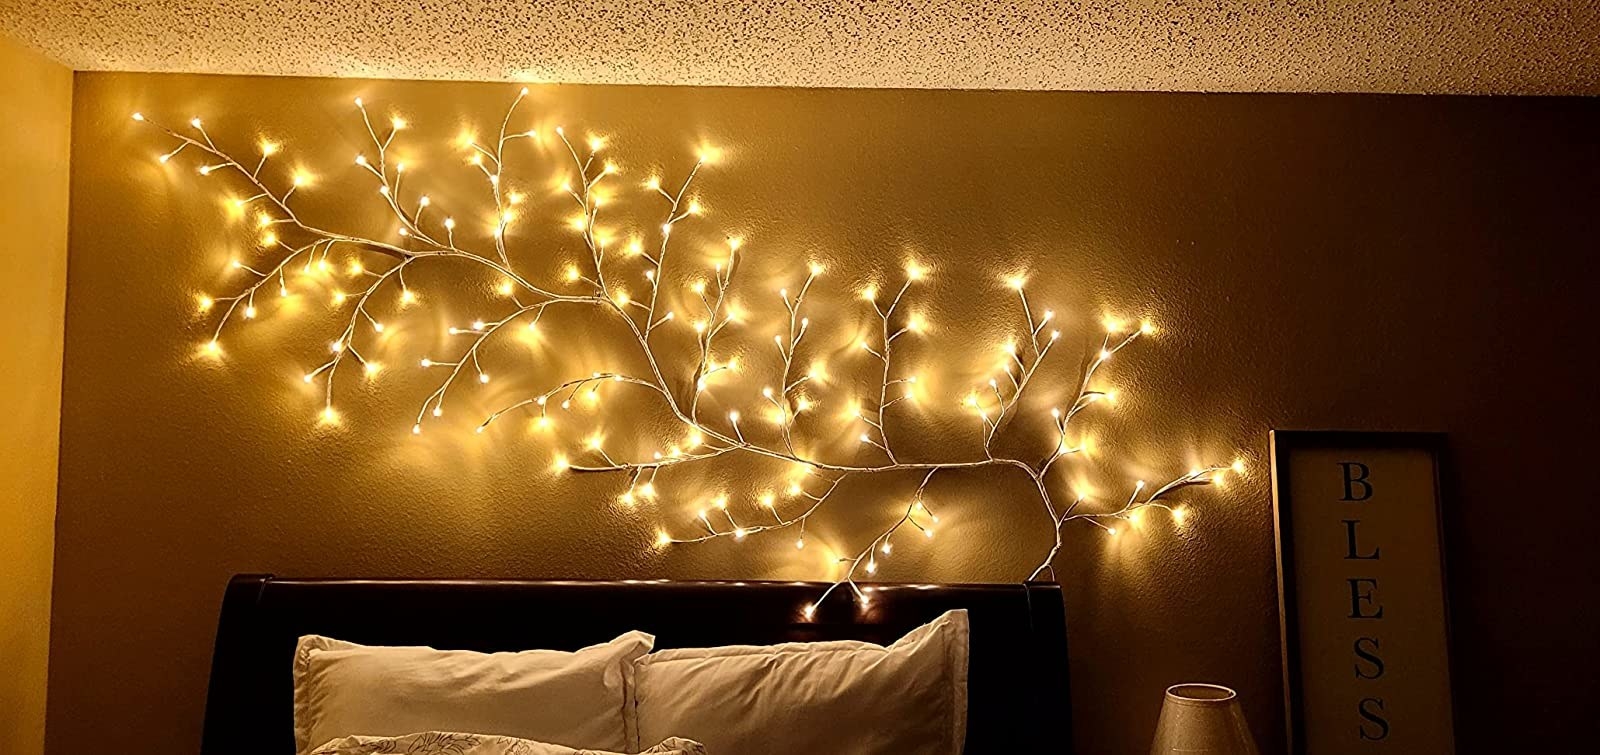 Vine lights hanging above a bed